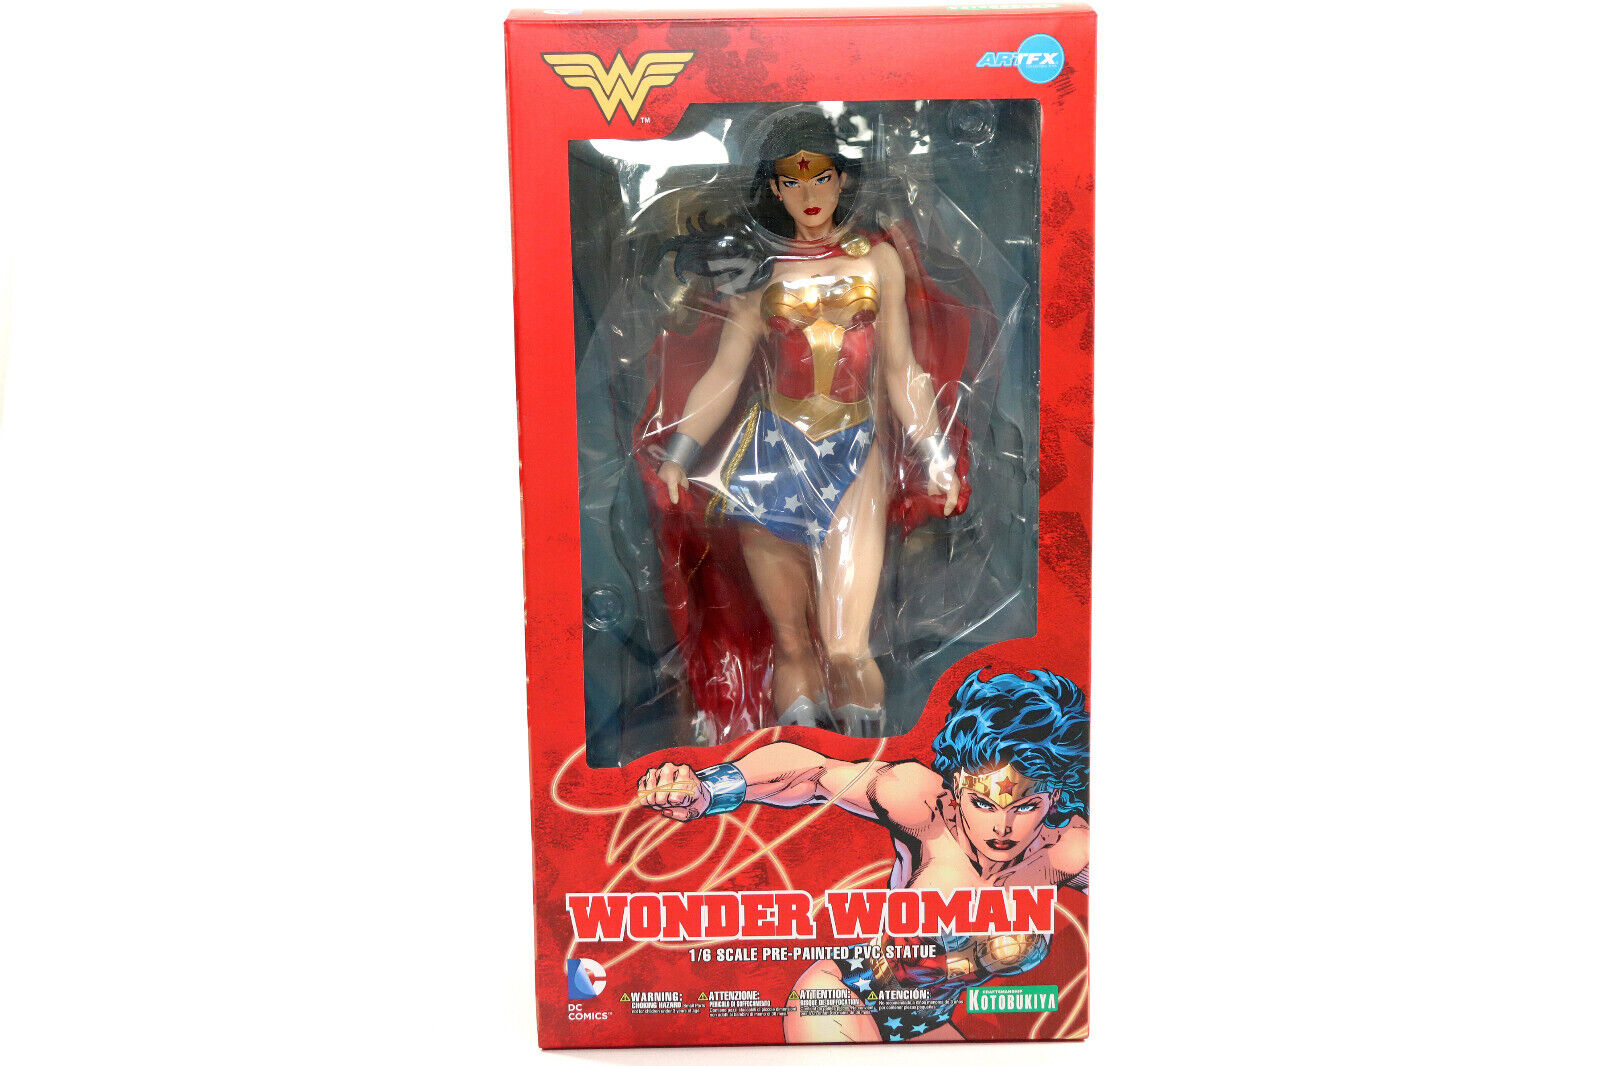 DC Comics KOTOBUKIYA Wonder Woman Artfx 1/6 Scale PVC Statue New Open Box 2014